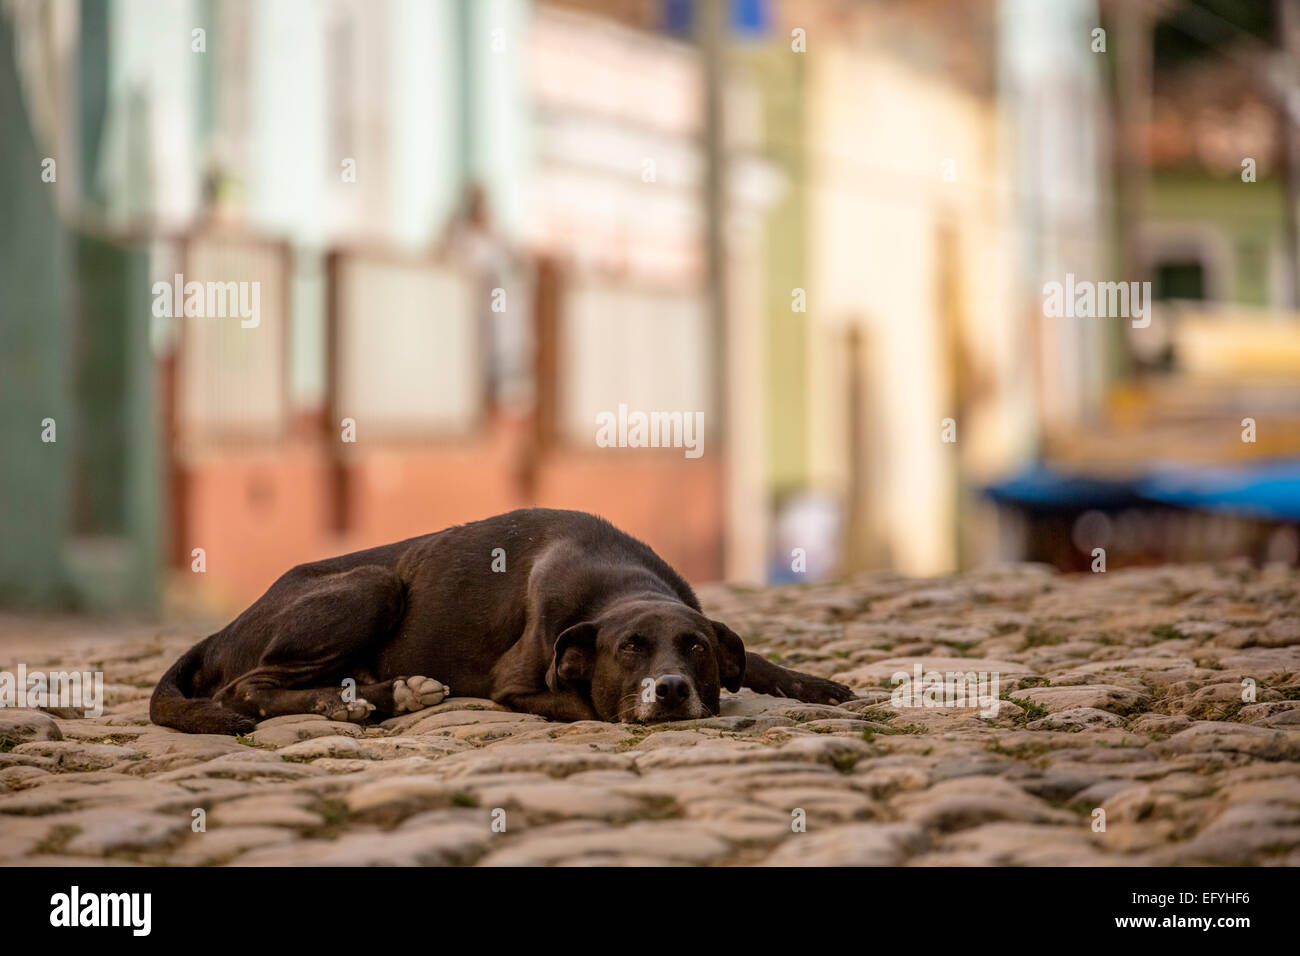 Cane marrone in appoggio sulla strada, città vecchia, Trinidad, Sancti Spiritus Provincia, Cuba Foto Stock